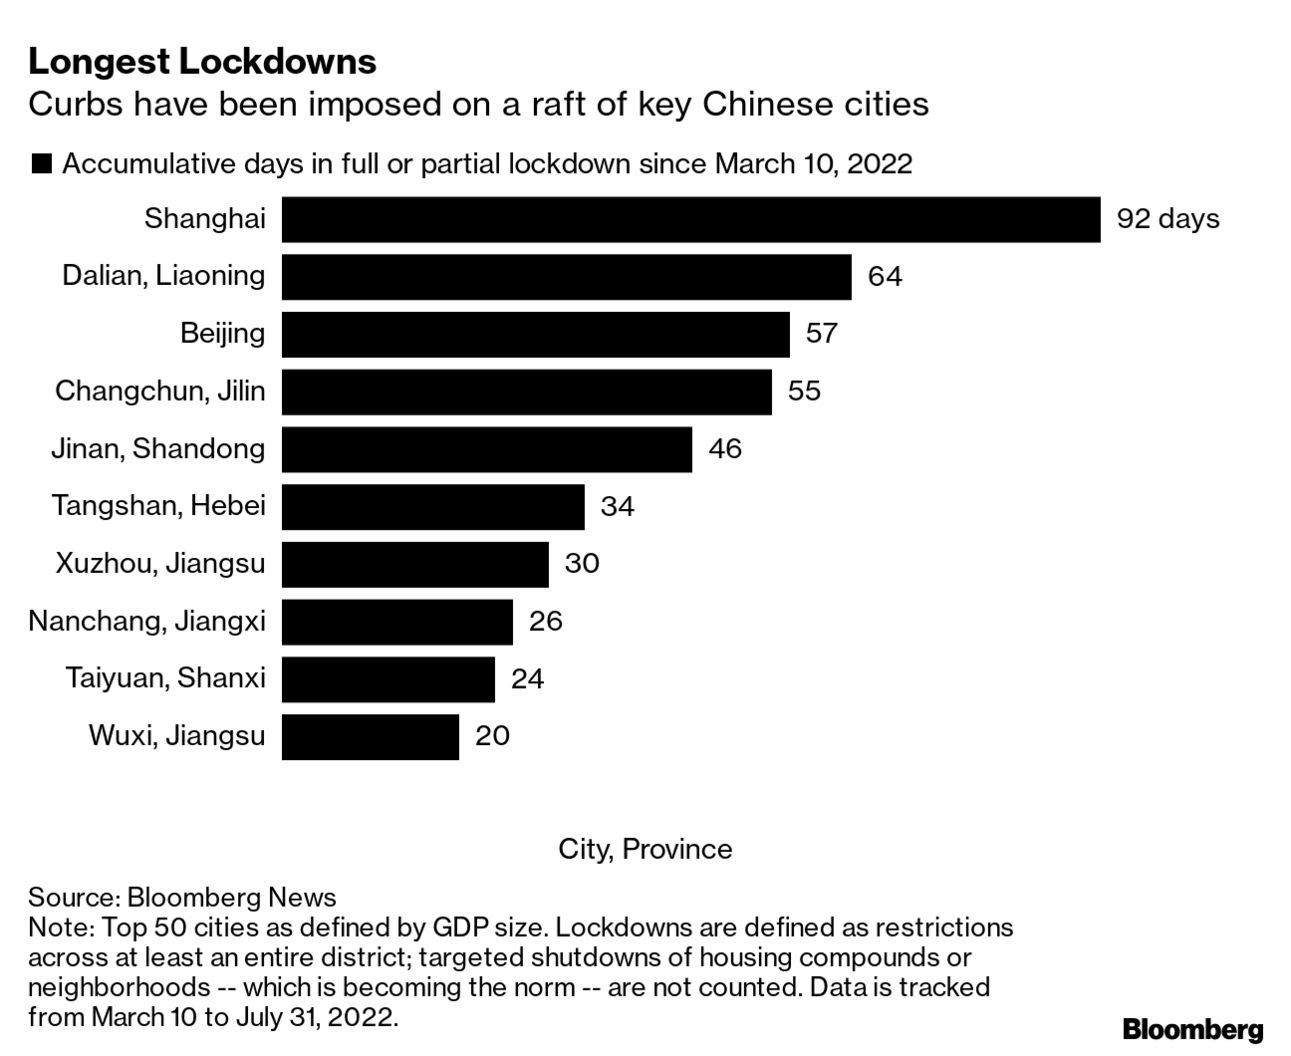 China curbs